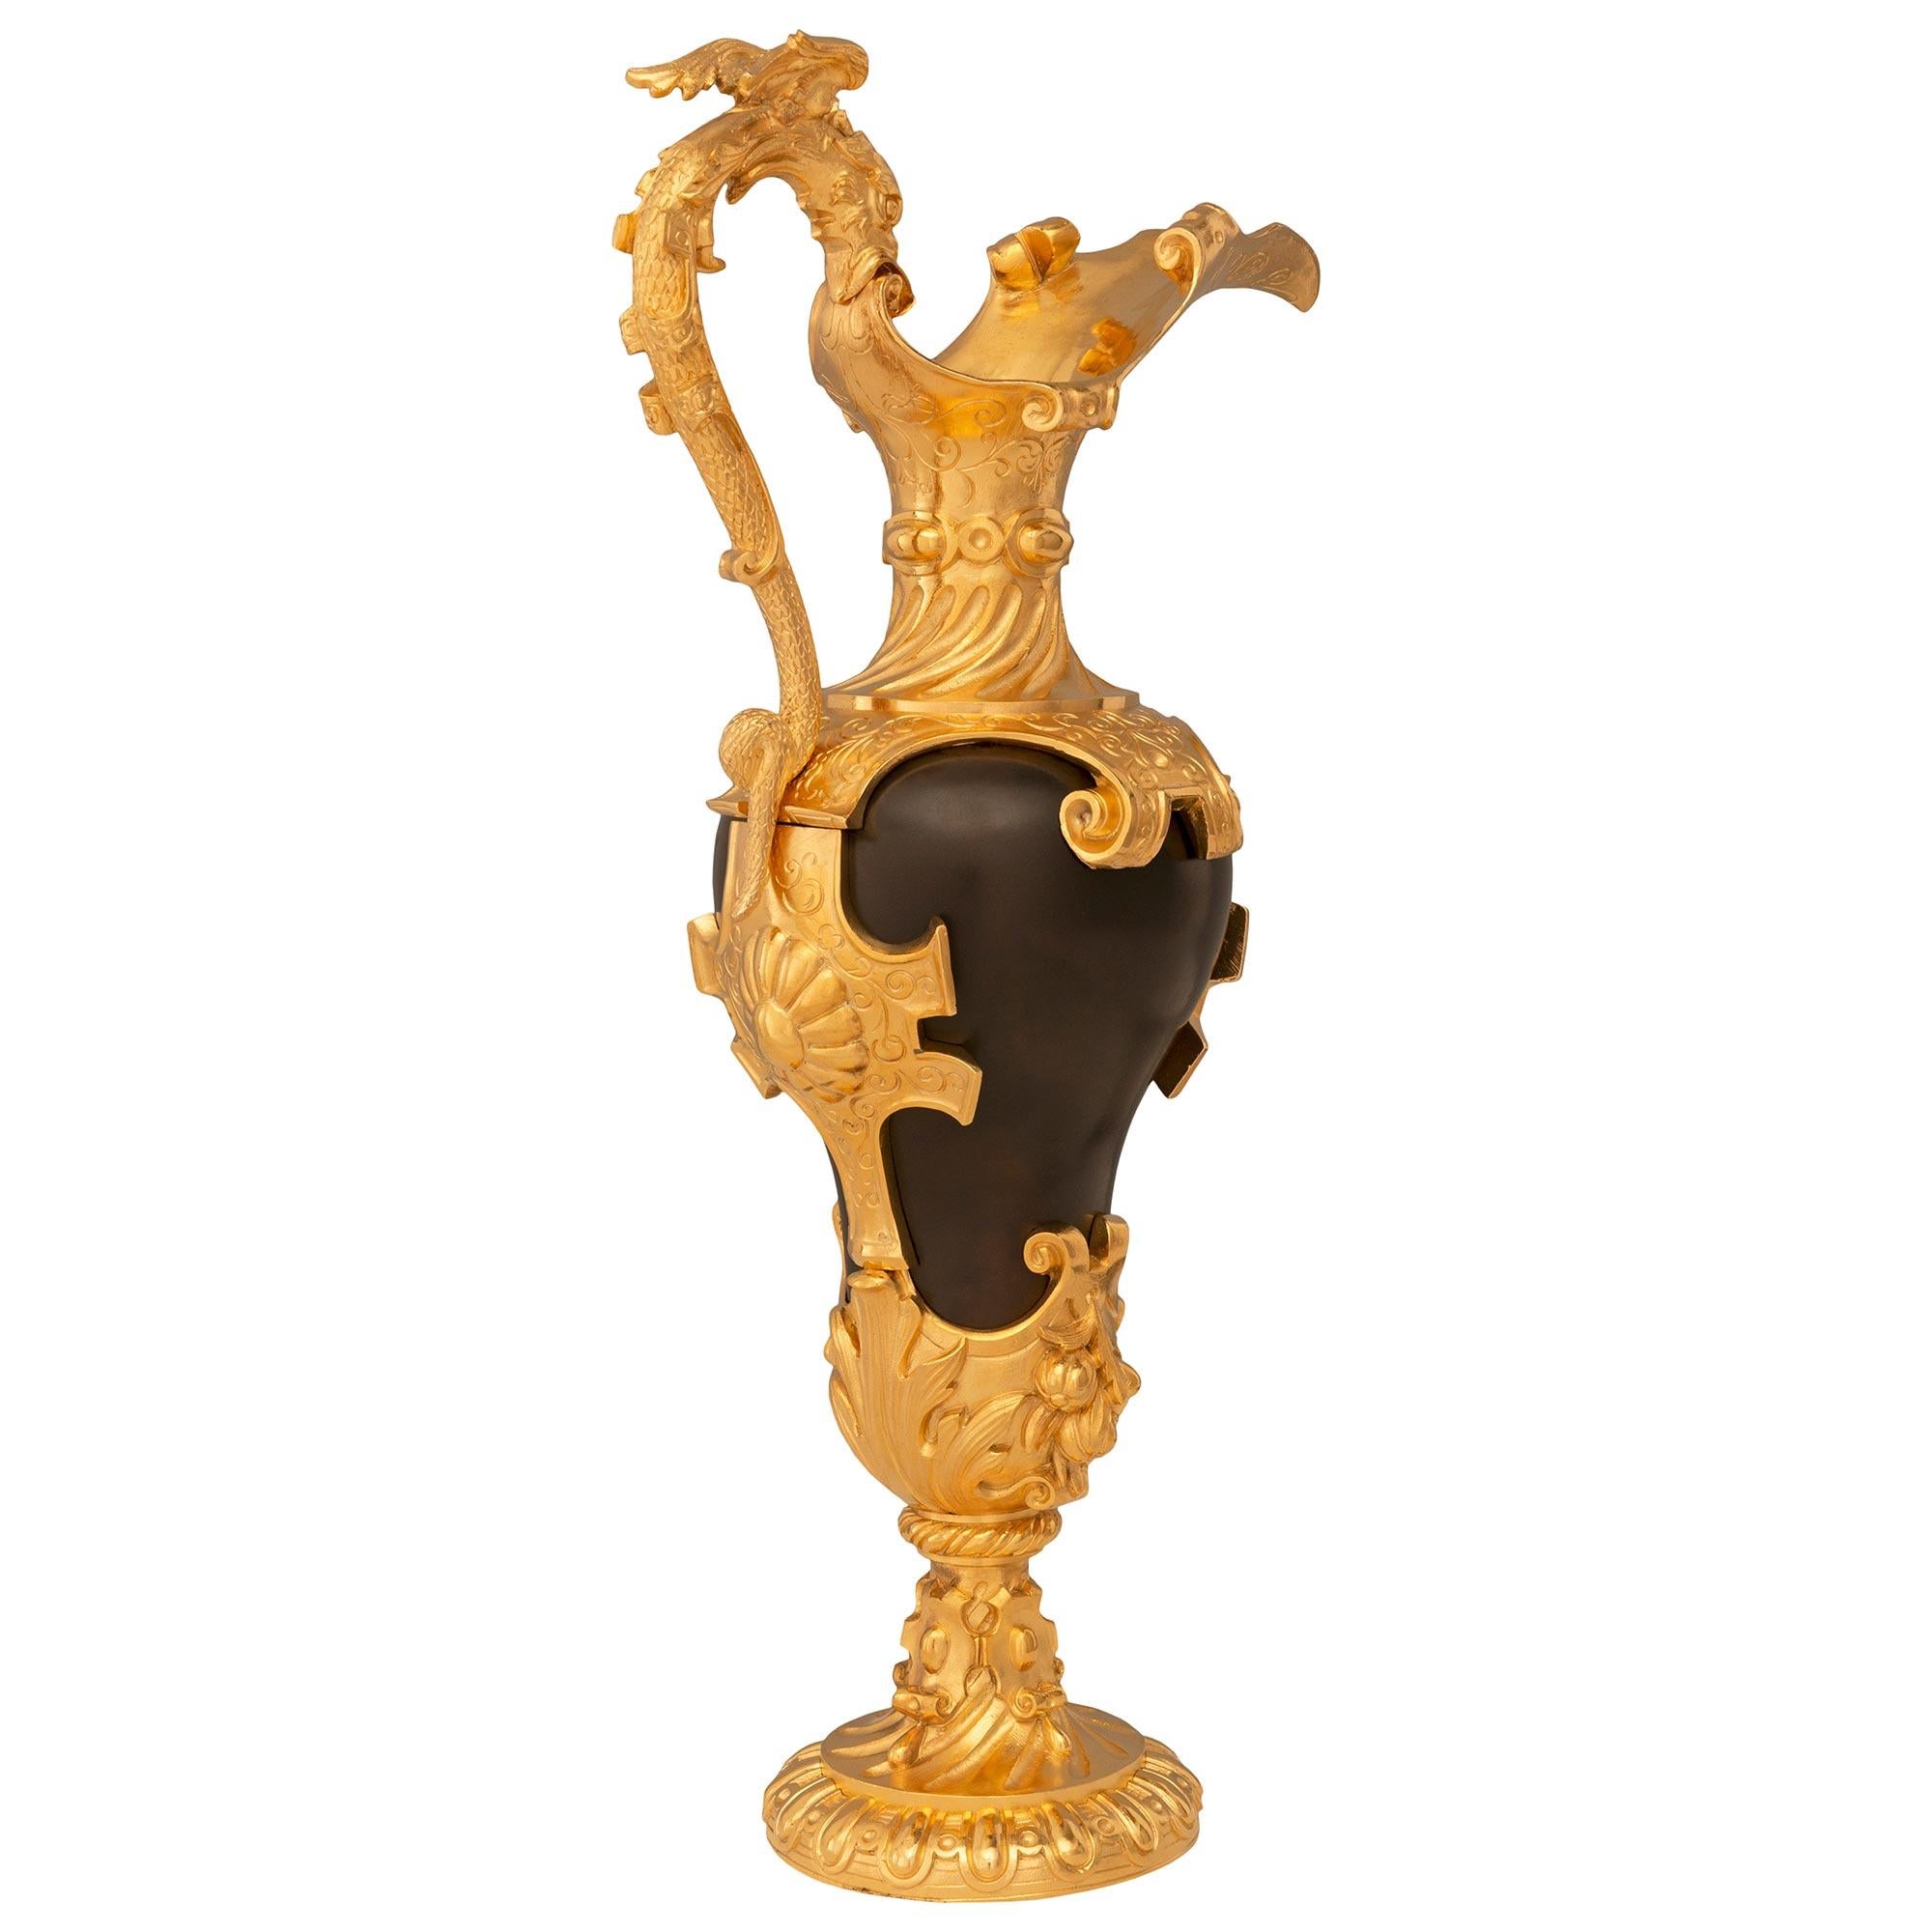 Paire d'aiguières en bronze patiné et bronze doré de la Renaissance française du XIXe siècle. Chaque aiguière est surmontée d'une superbe base circulaire cannelée et d'un piédestal en forme de socle finement cannelé en spirale avec des réserves